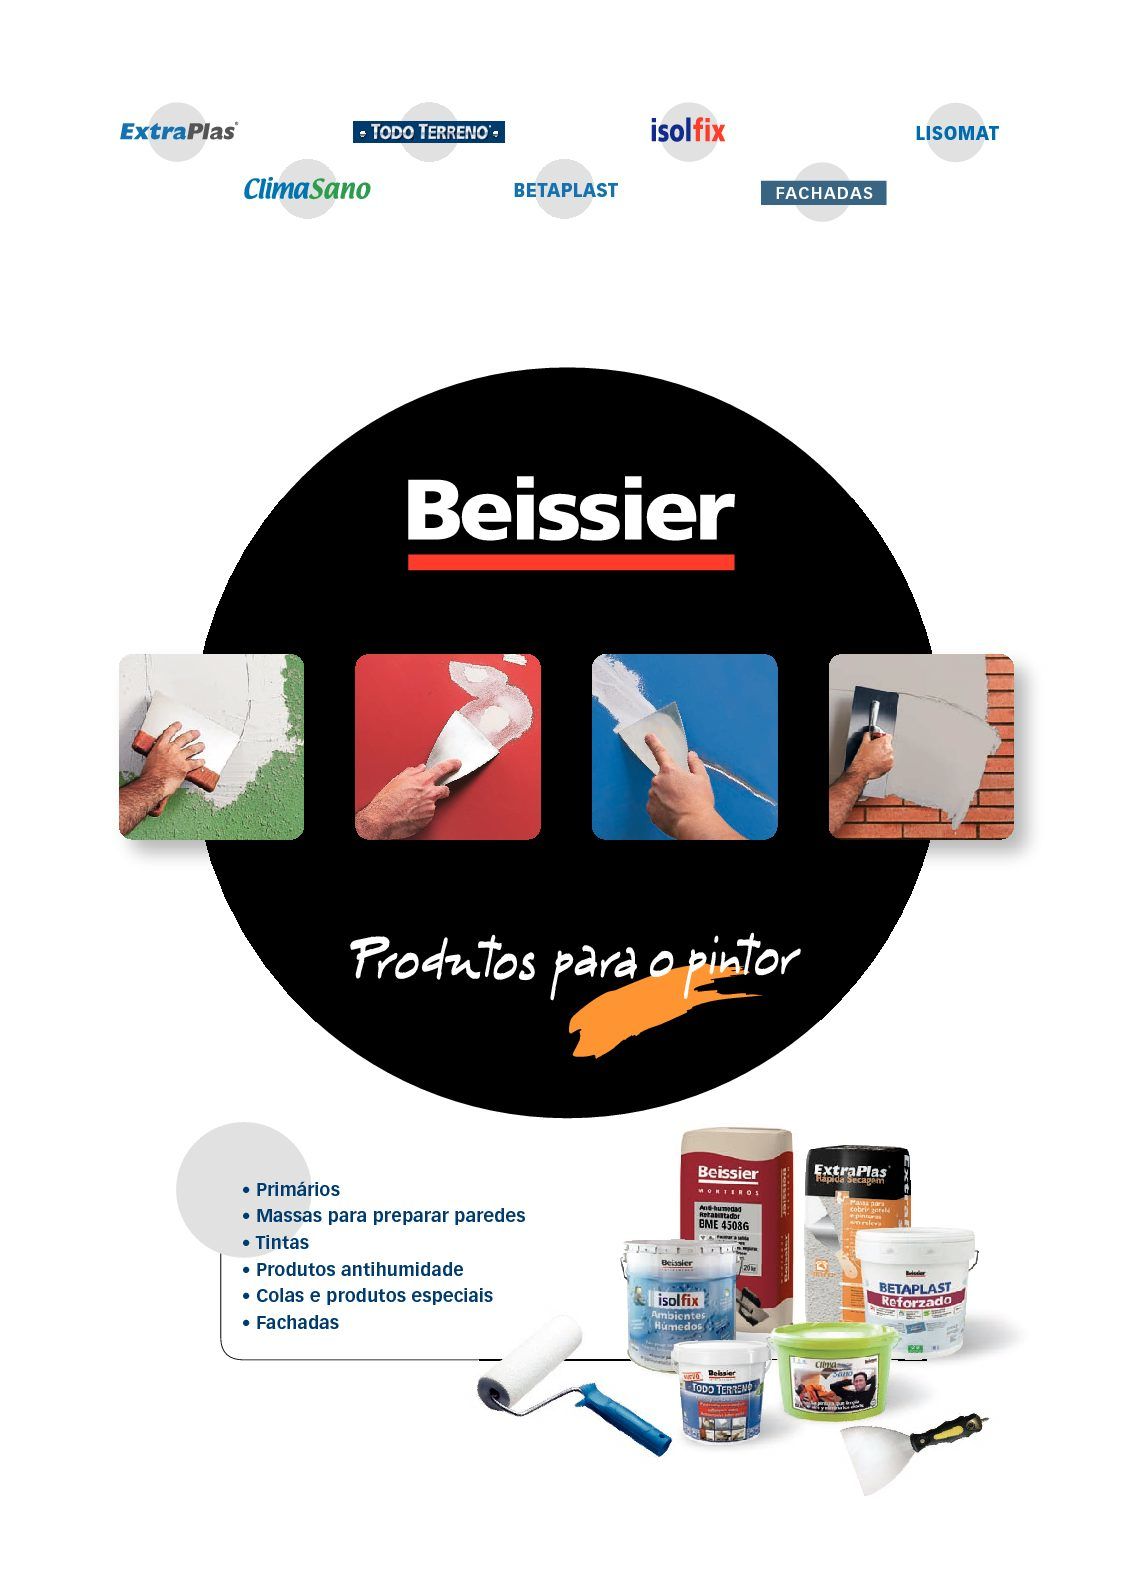 Beissier - Produtos